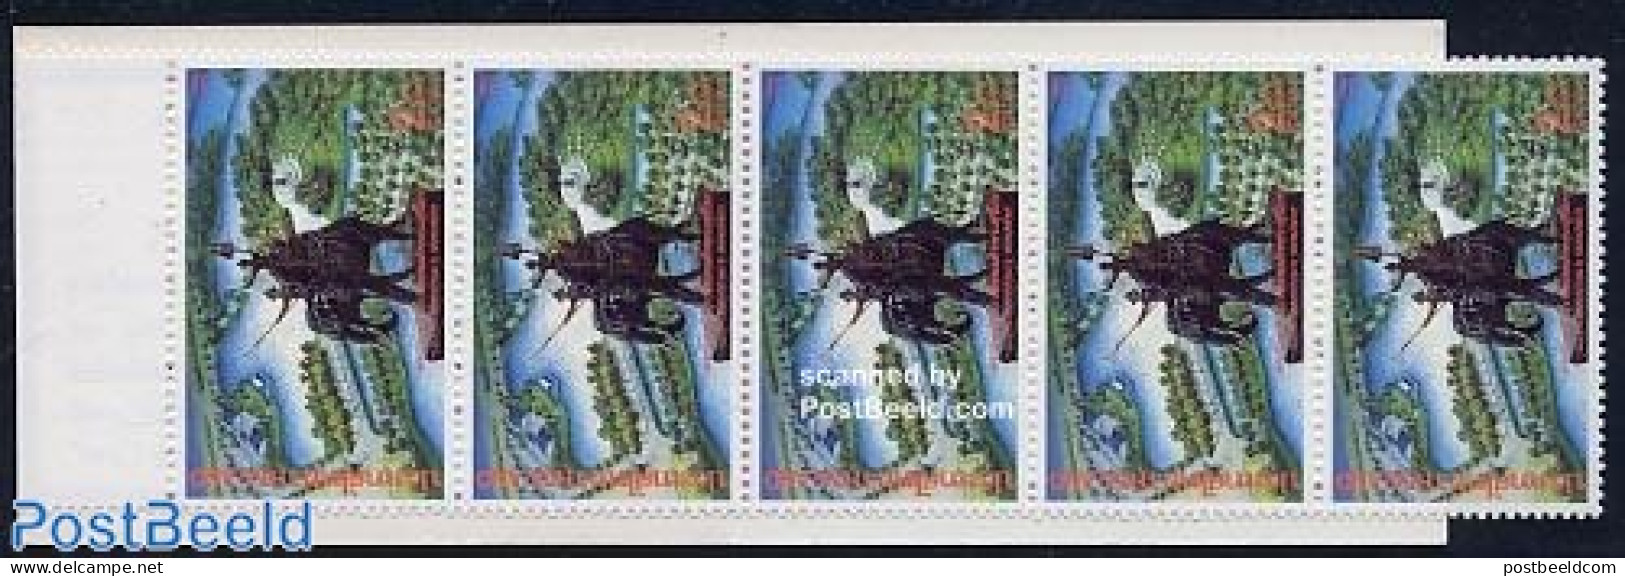 Thailand 1993 King Suriyothai Booklet, Mint NH, Nature - Elephants - Stamp Booklets - Non Classés